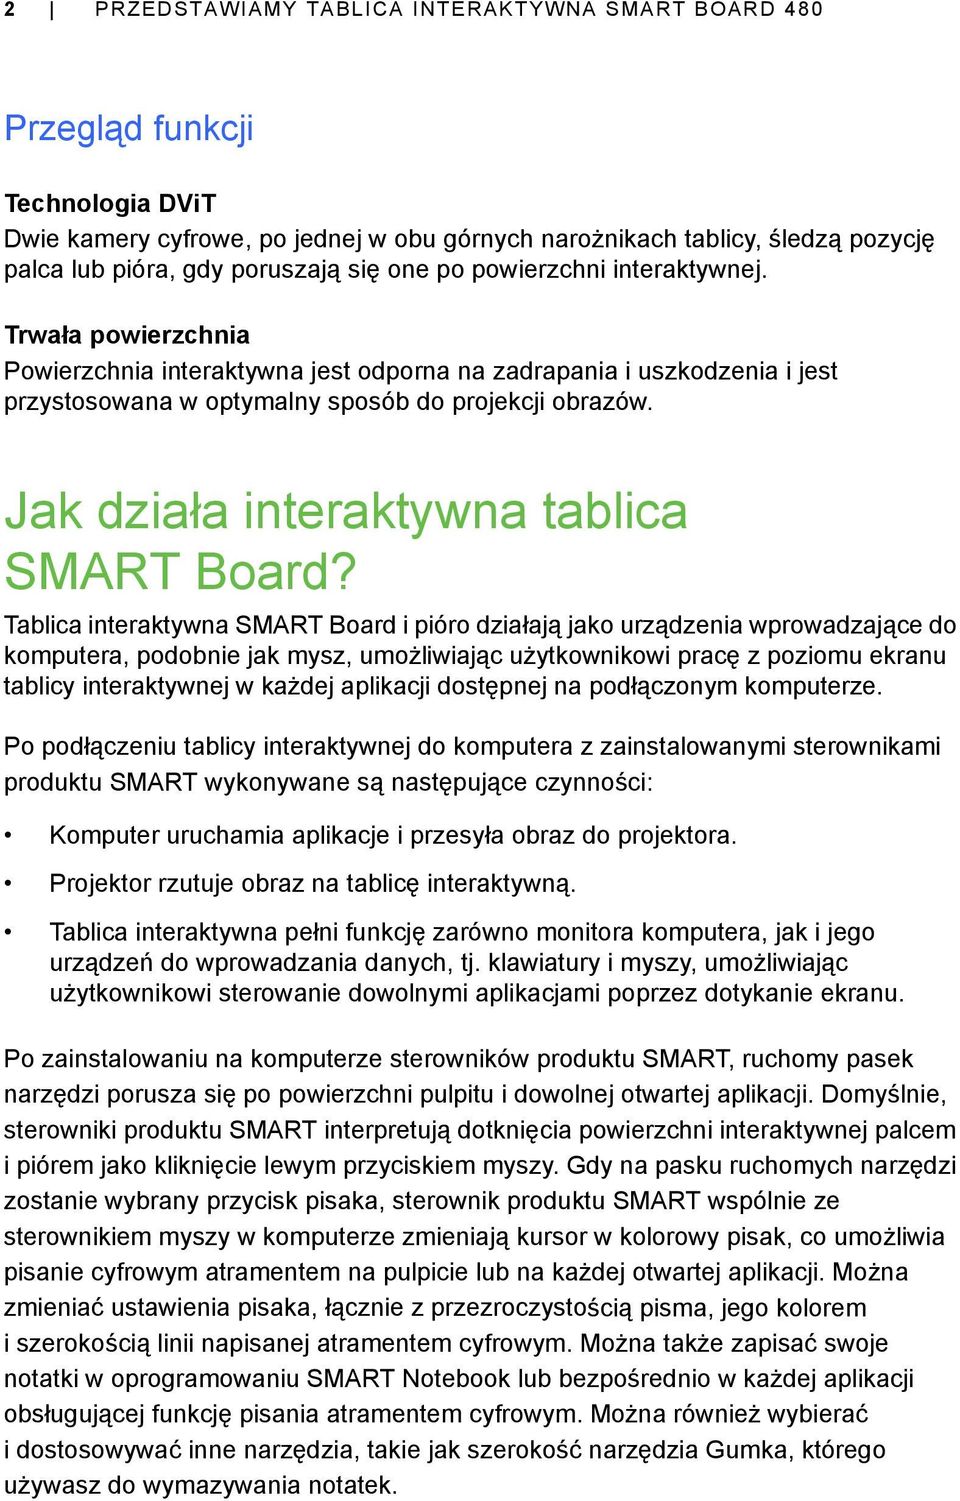 Jak działa interaktywna tablica SMART Board?